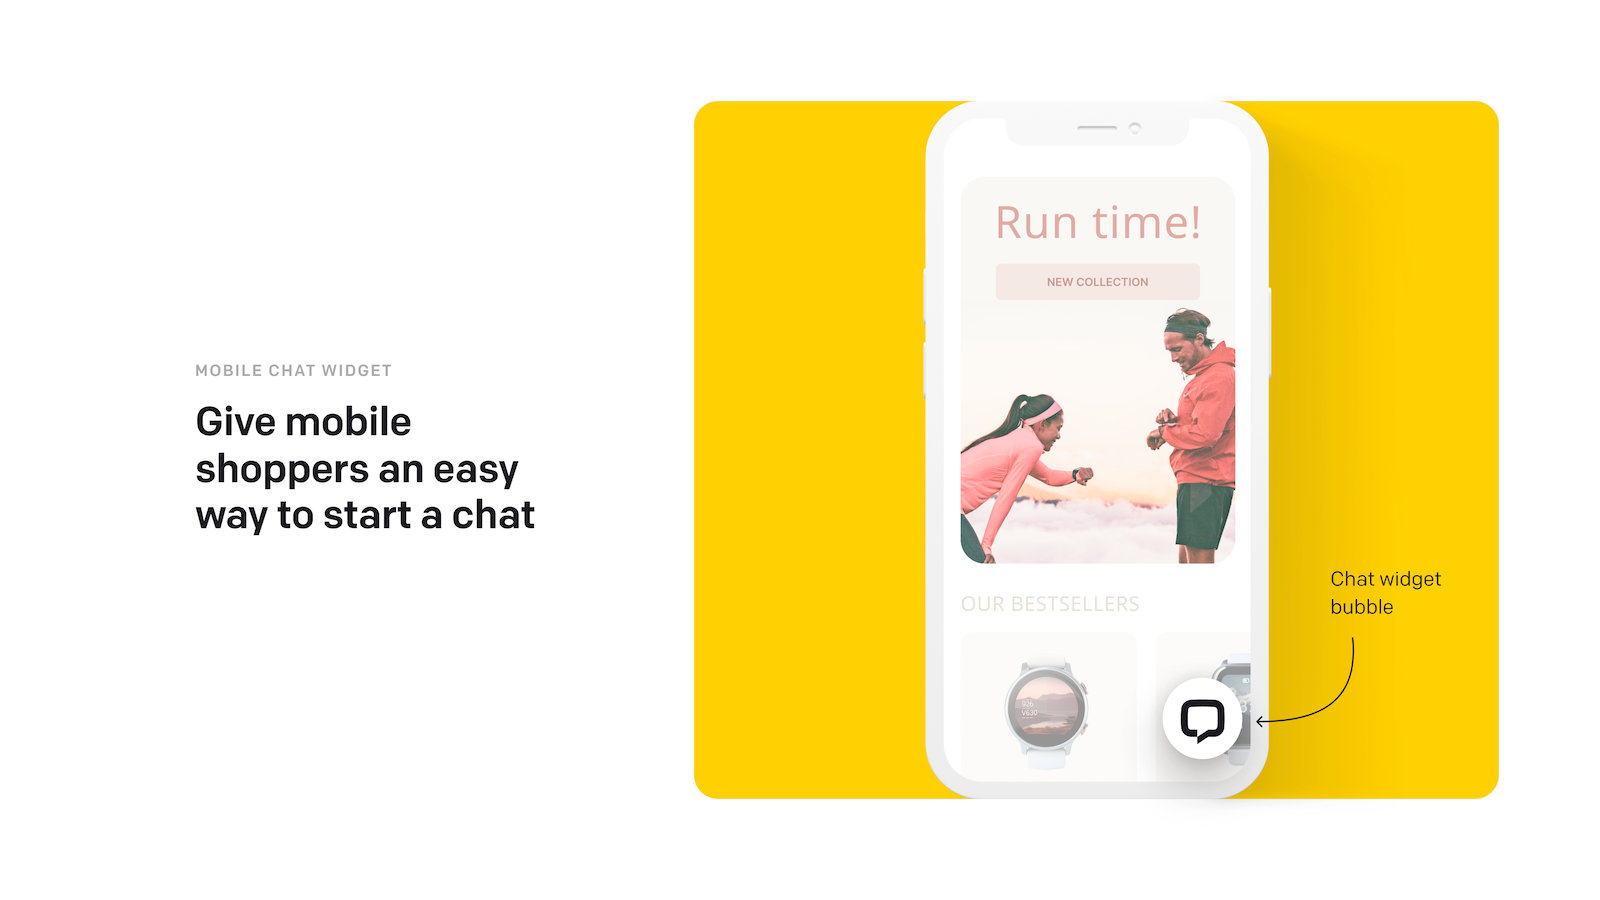 En chattwidgetbubbla som mobila kunder kan använda för att starta en chatt.